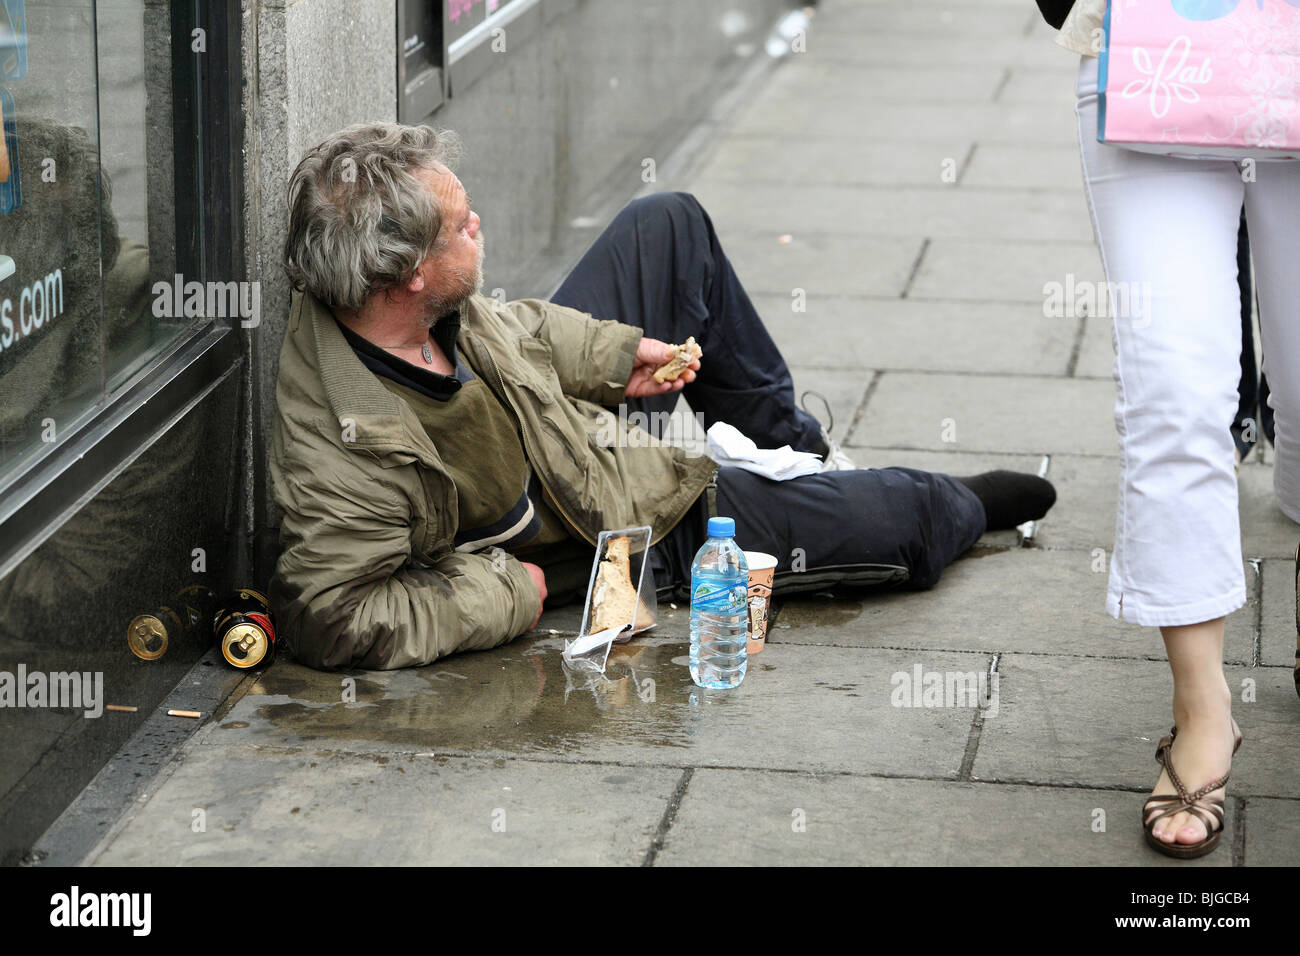 man-lying-on-a-sidewalk-dublin-ireland-BJGCB4.jpg